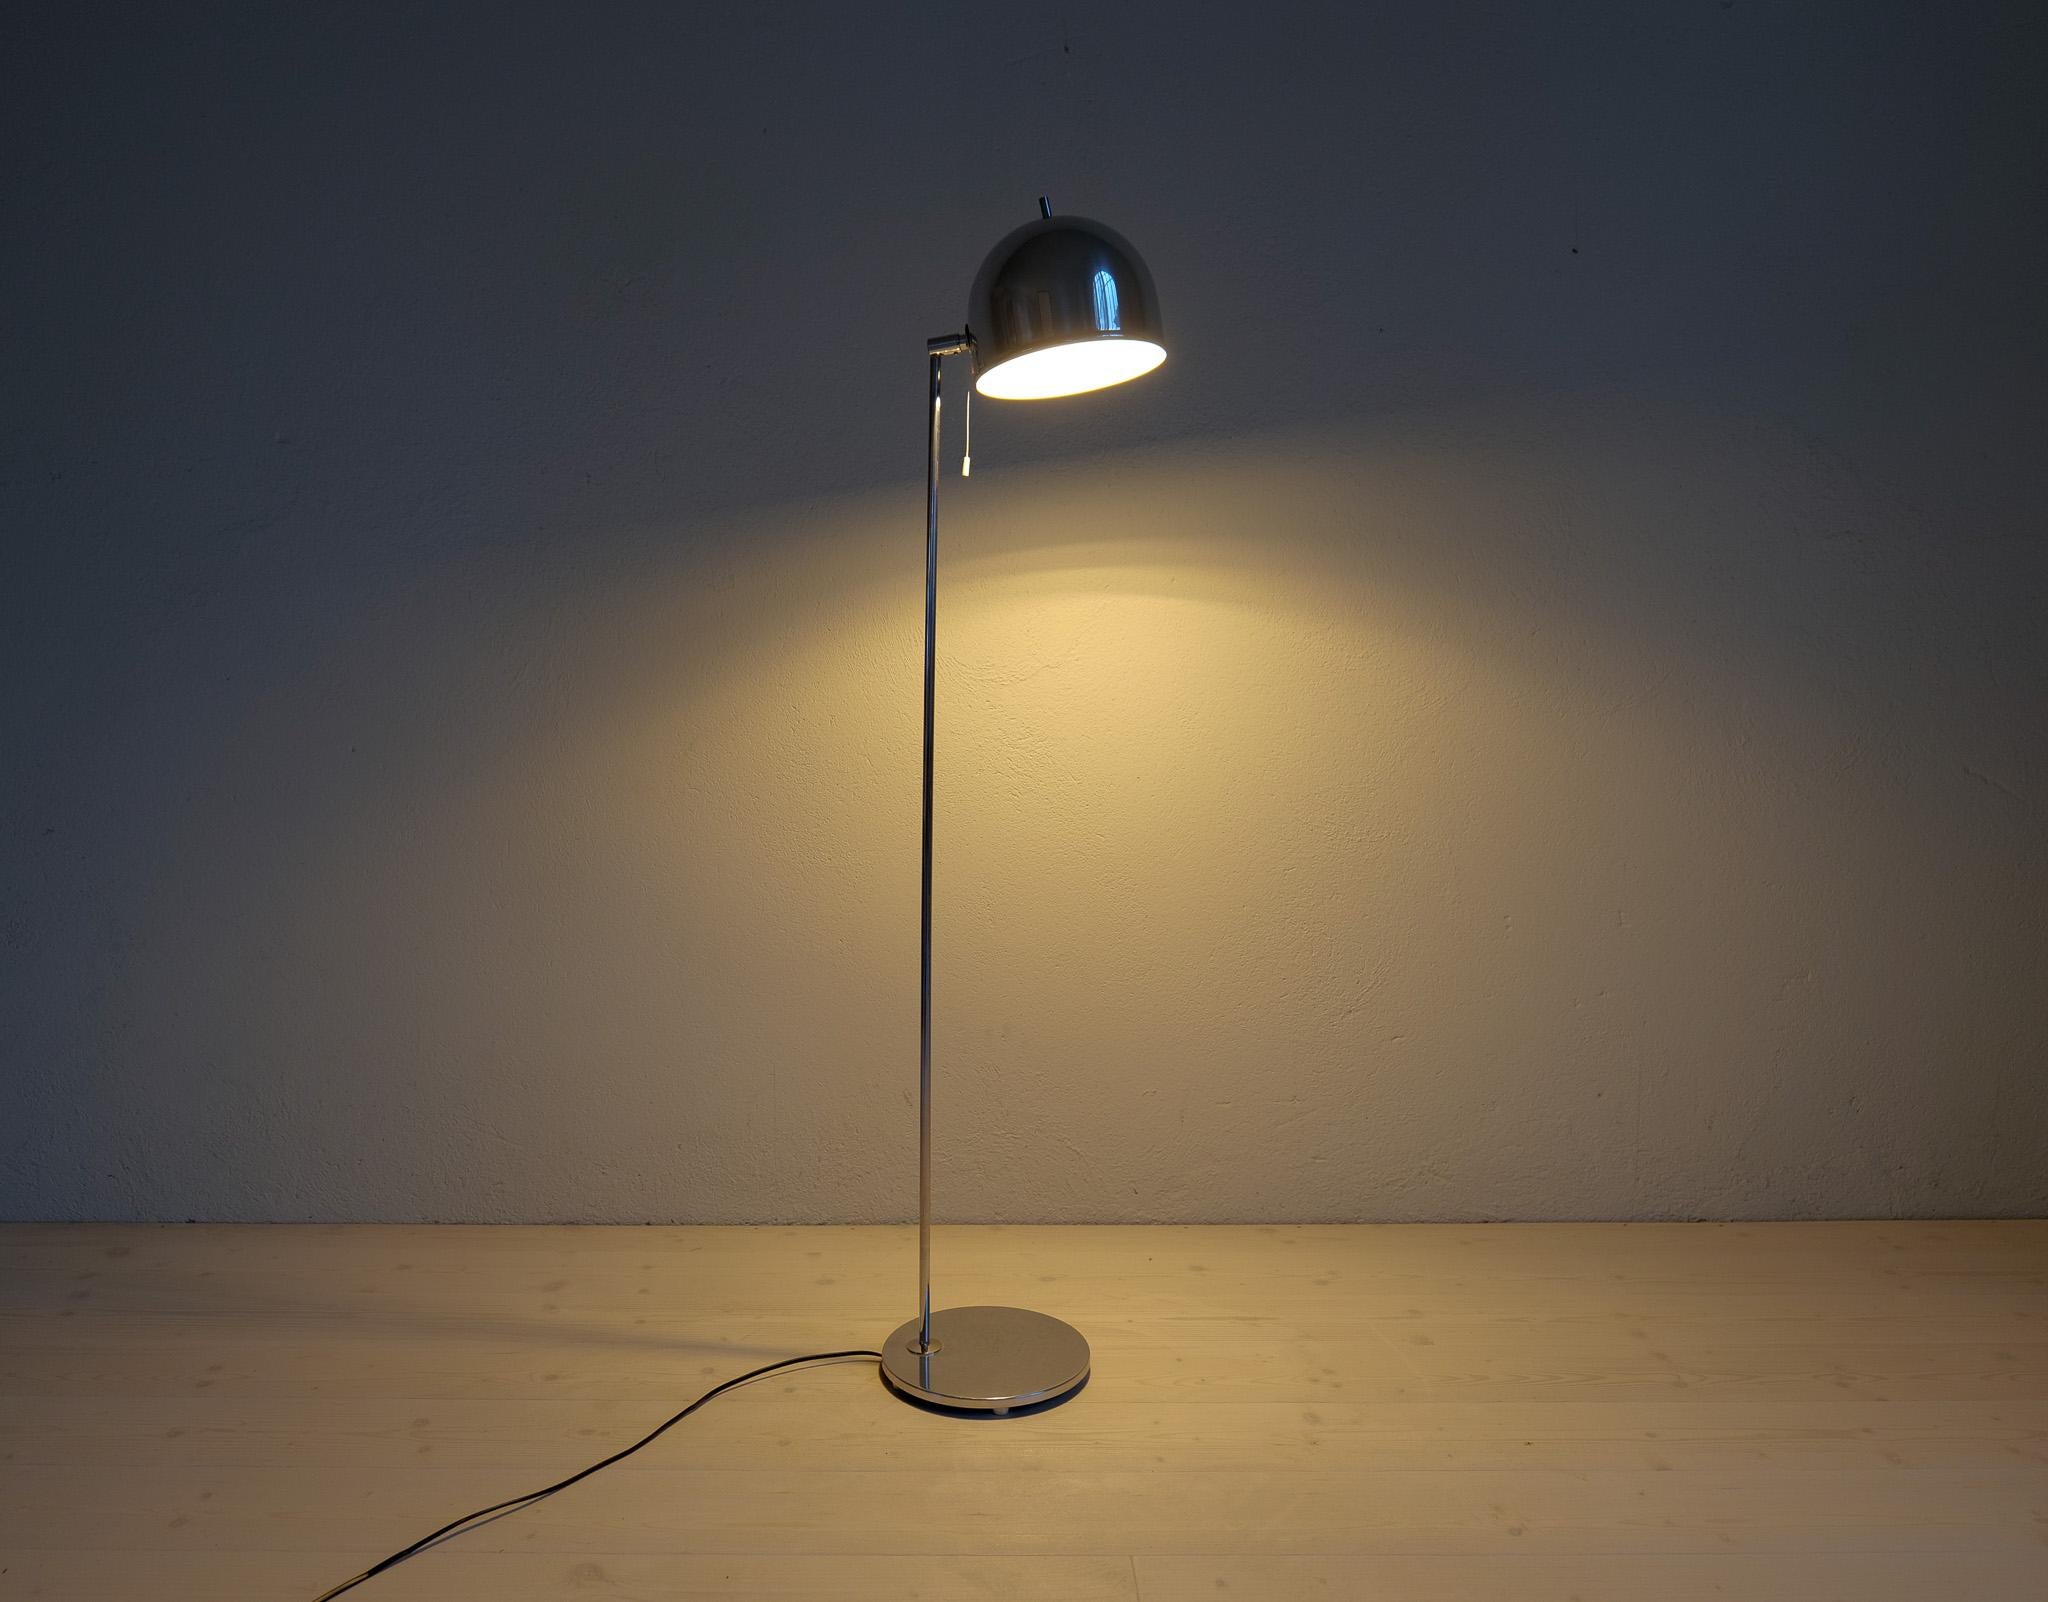 Midcentury Modern Floor Lamp in Chrome, Model G-075, Bergboms, Sweden, 1960s For Sale 6